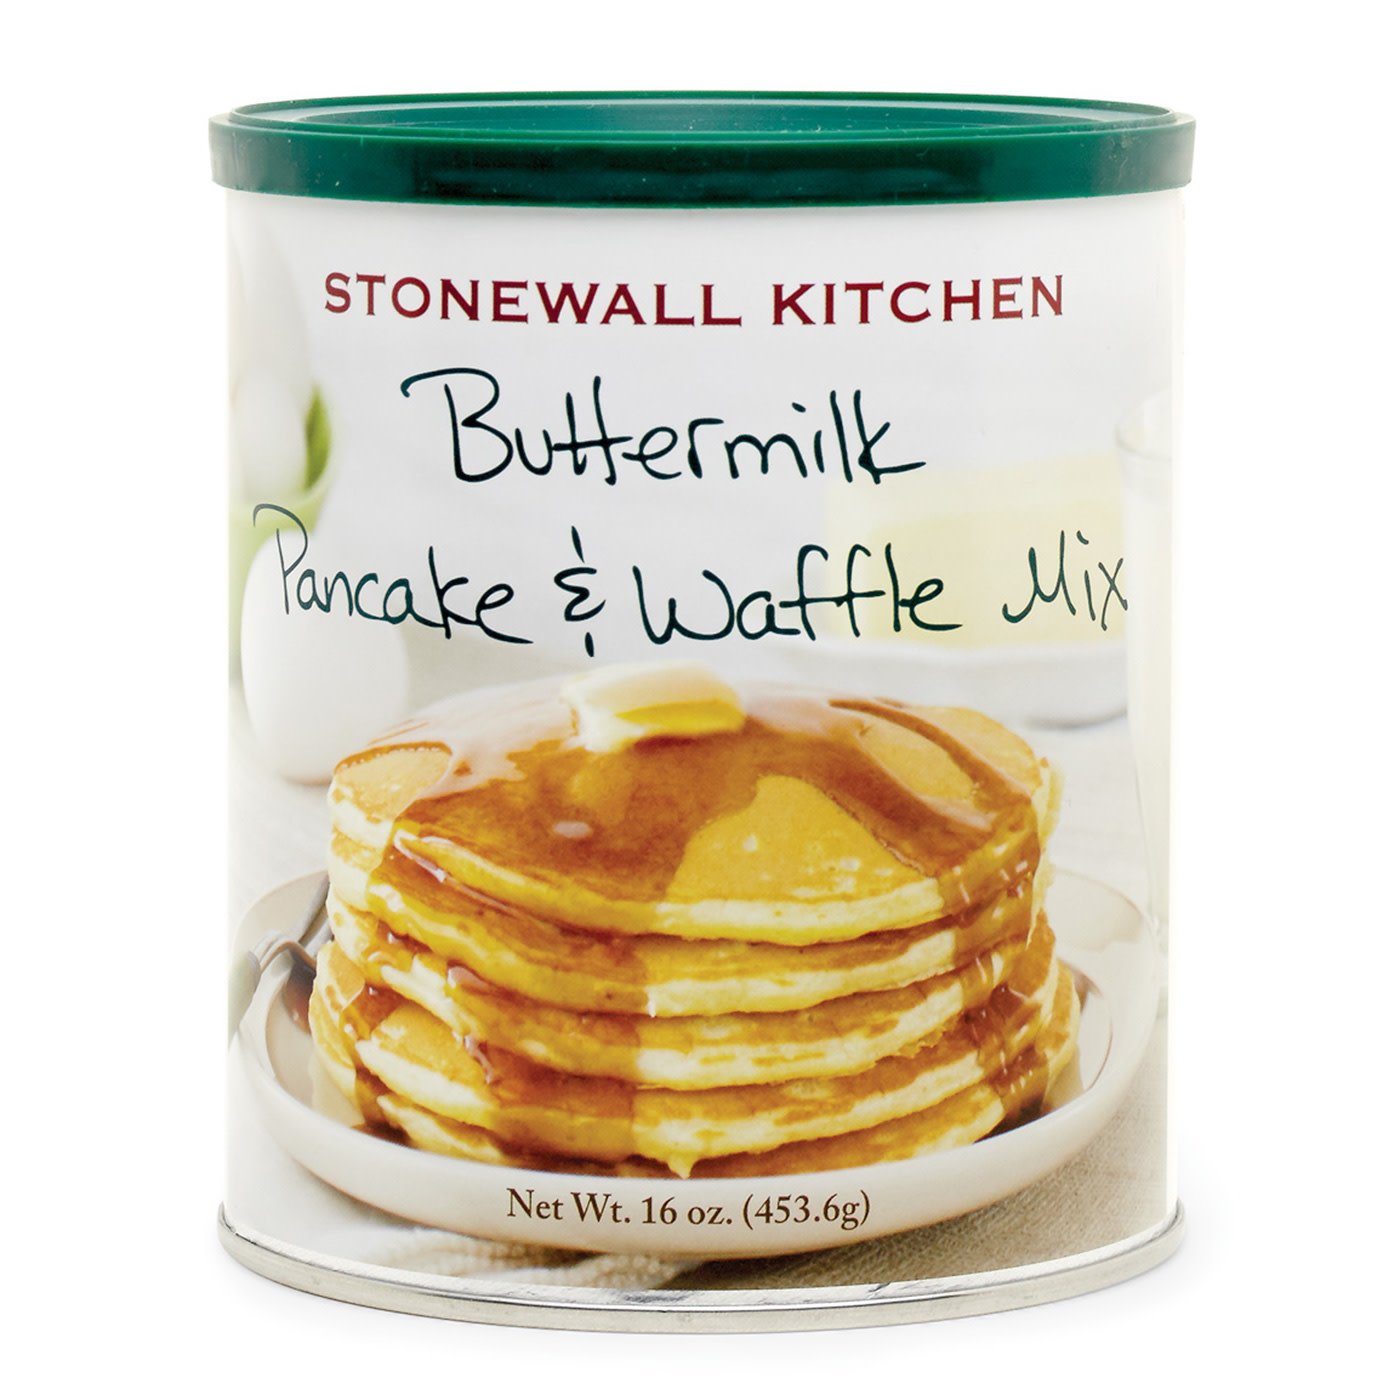 Stonewall Kitchen Waffle/Pancake Buttermilk Mix